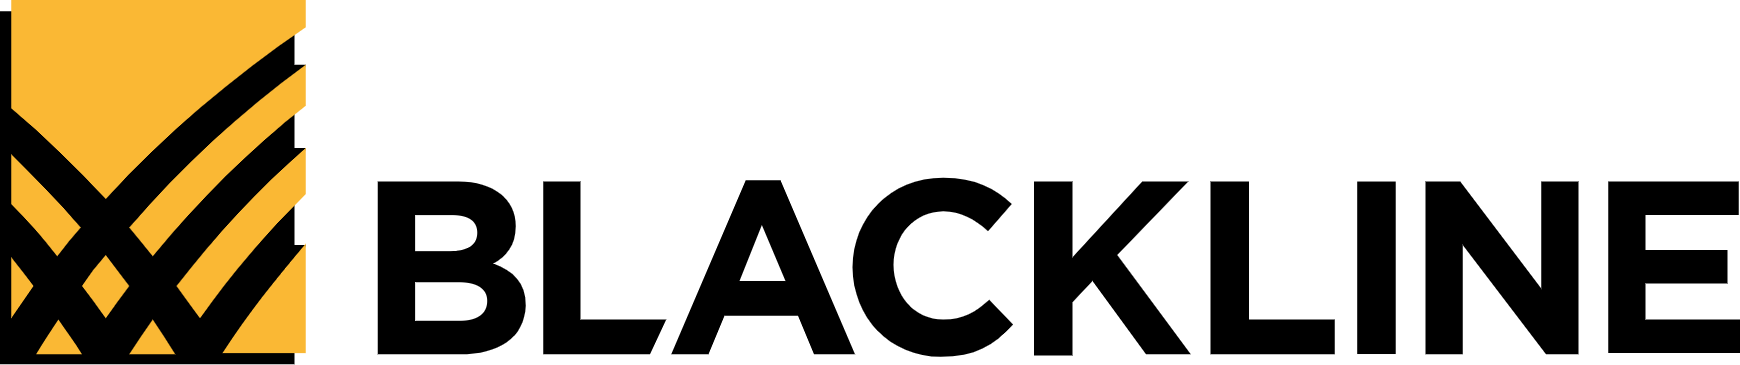 BlackLine logo large (transparent PNG)